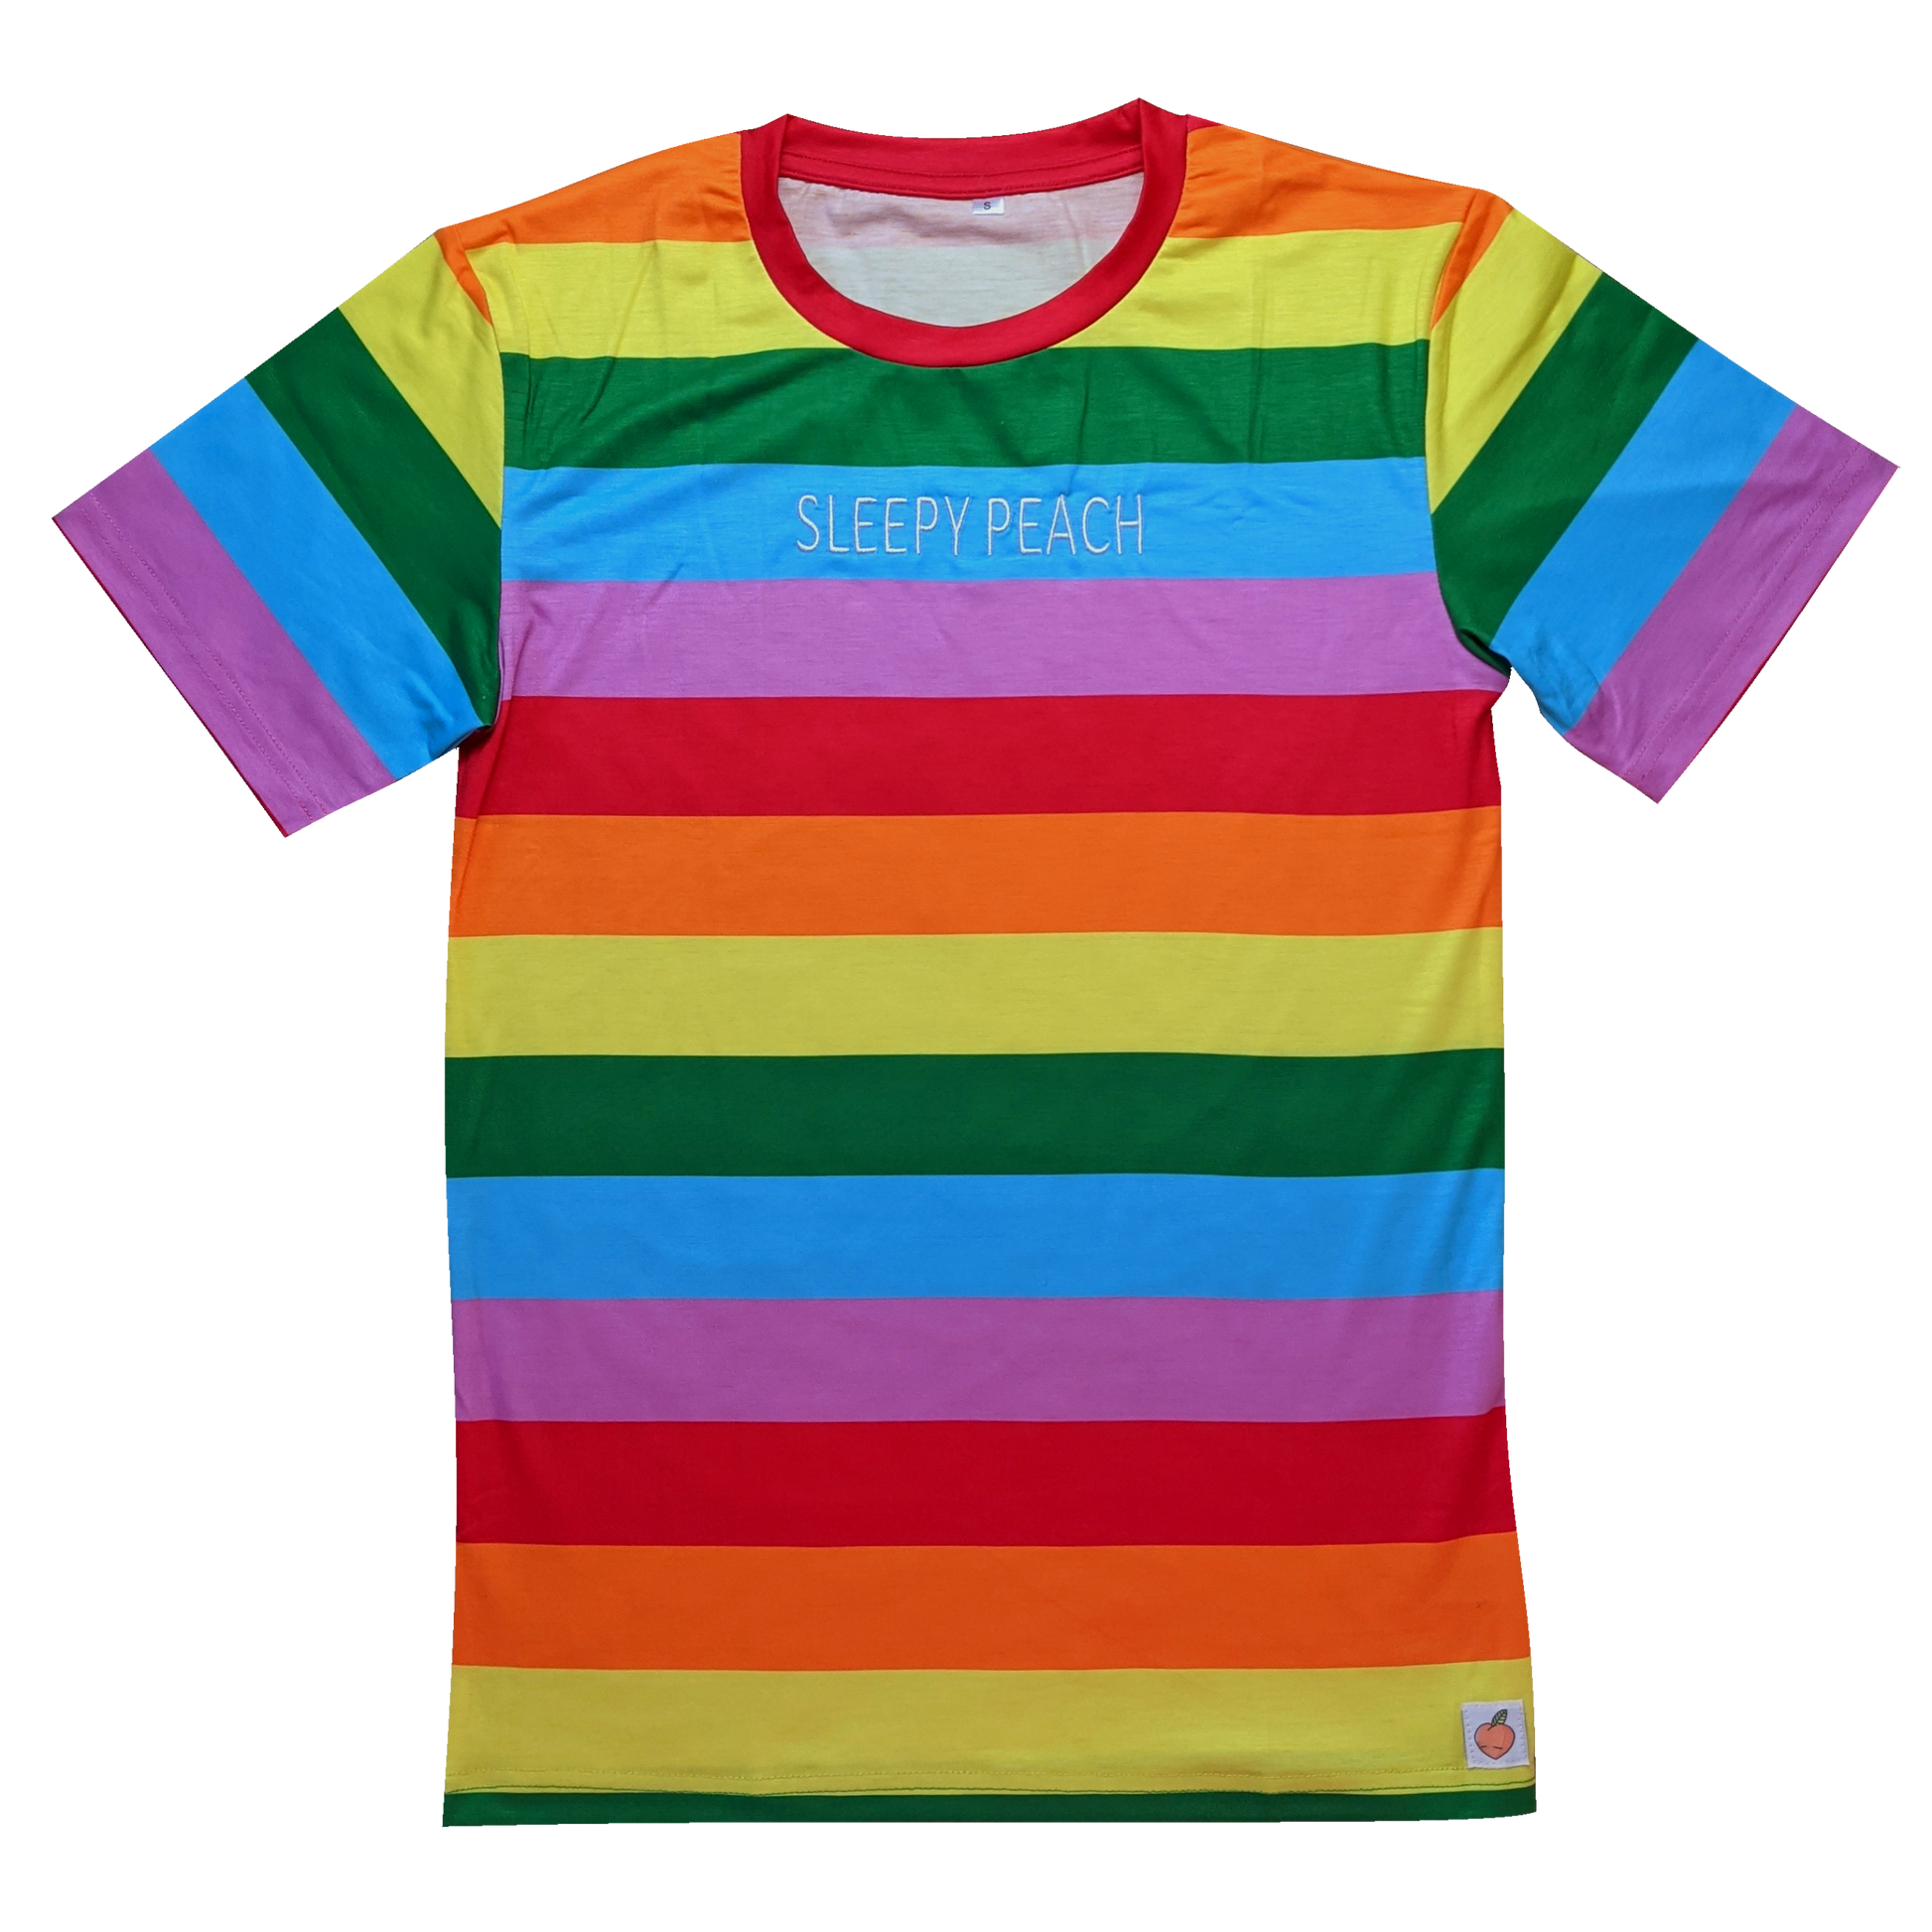 The Endless Rainbow Shirt - Sleepy Peach